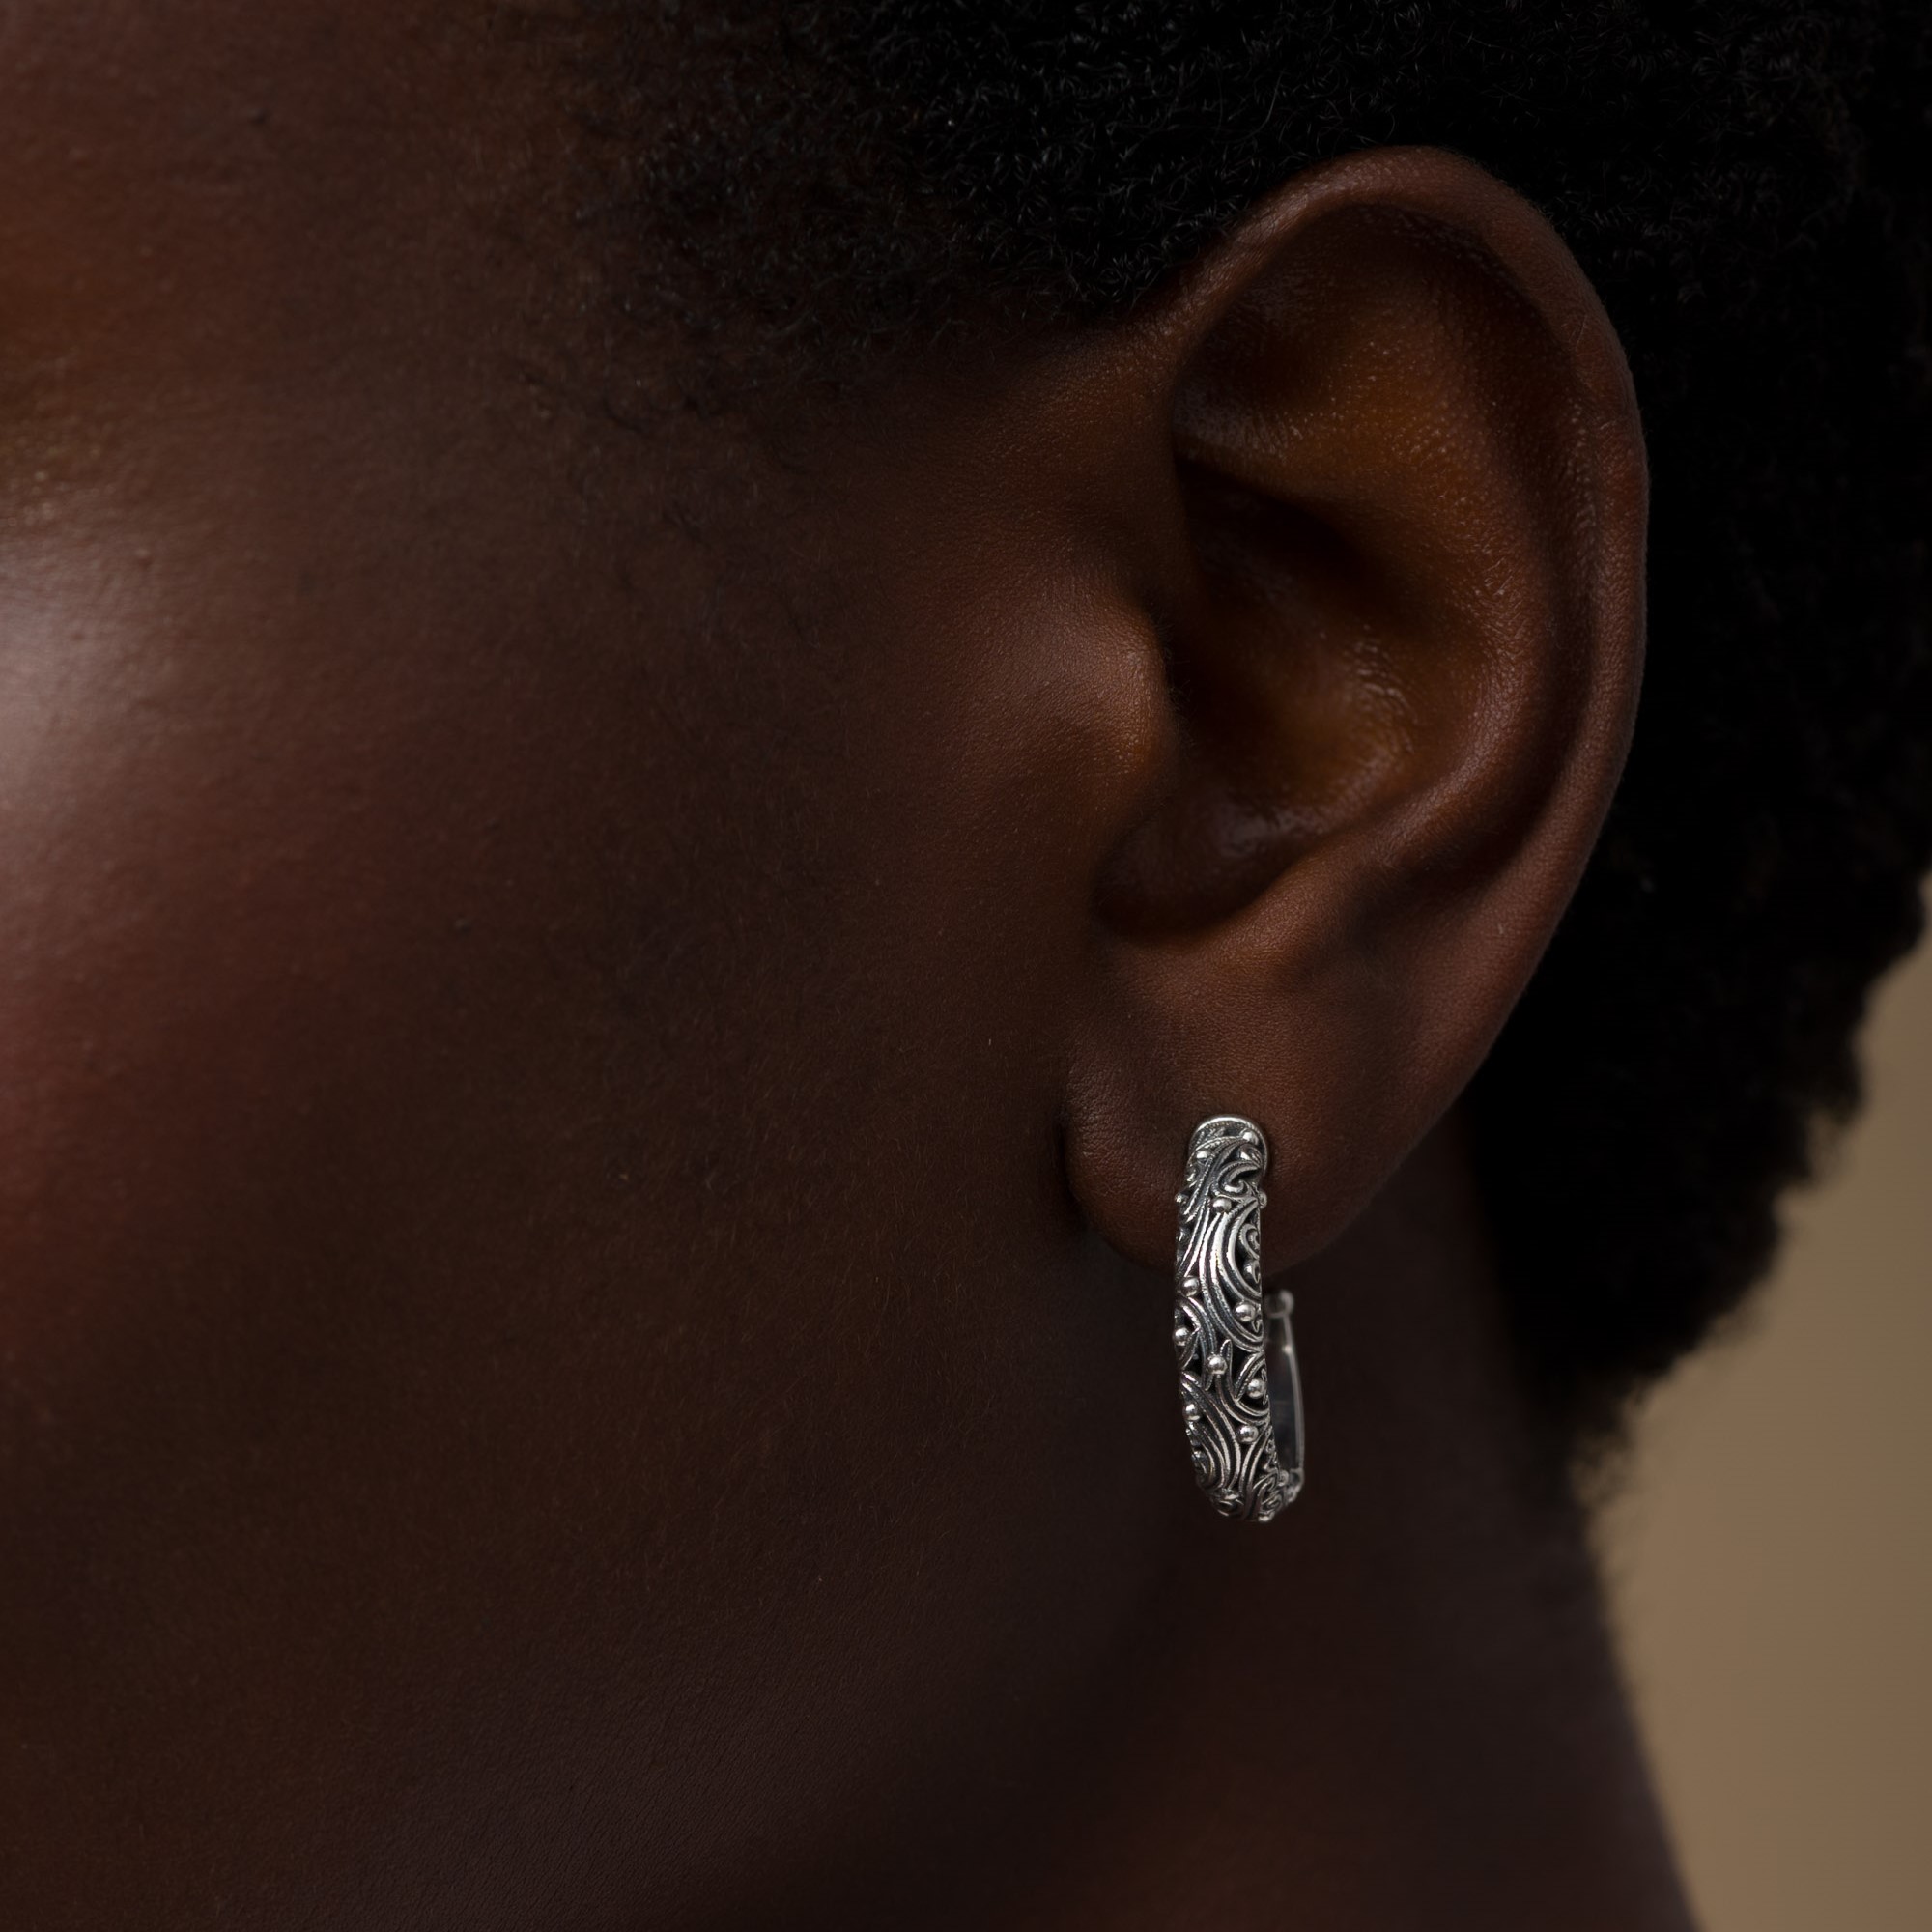 Kynthia Hoops Earrings in Sterling Silver